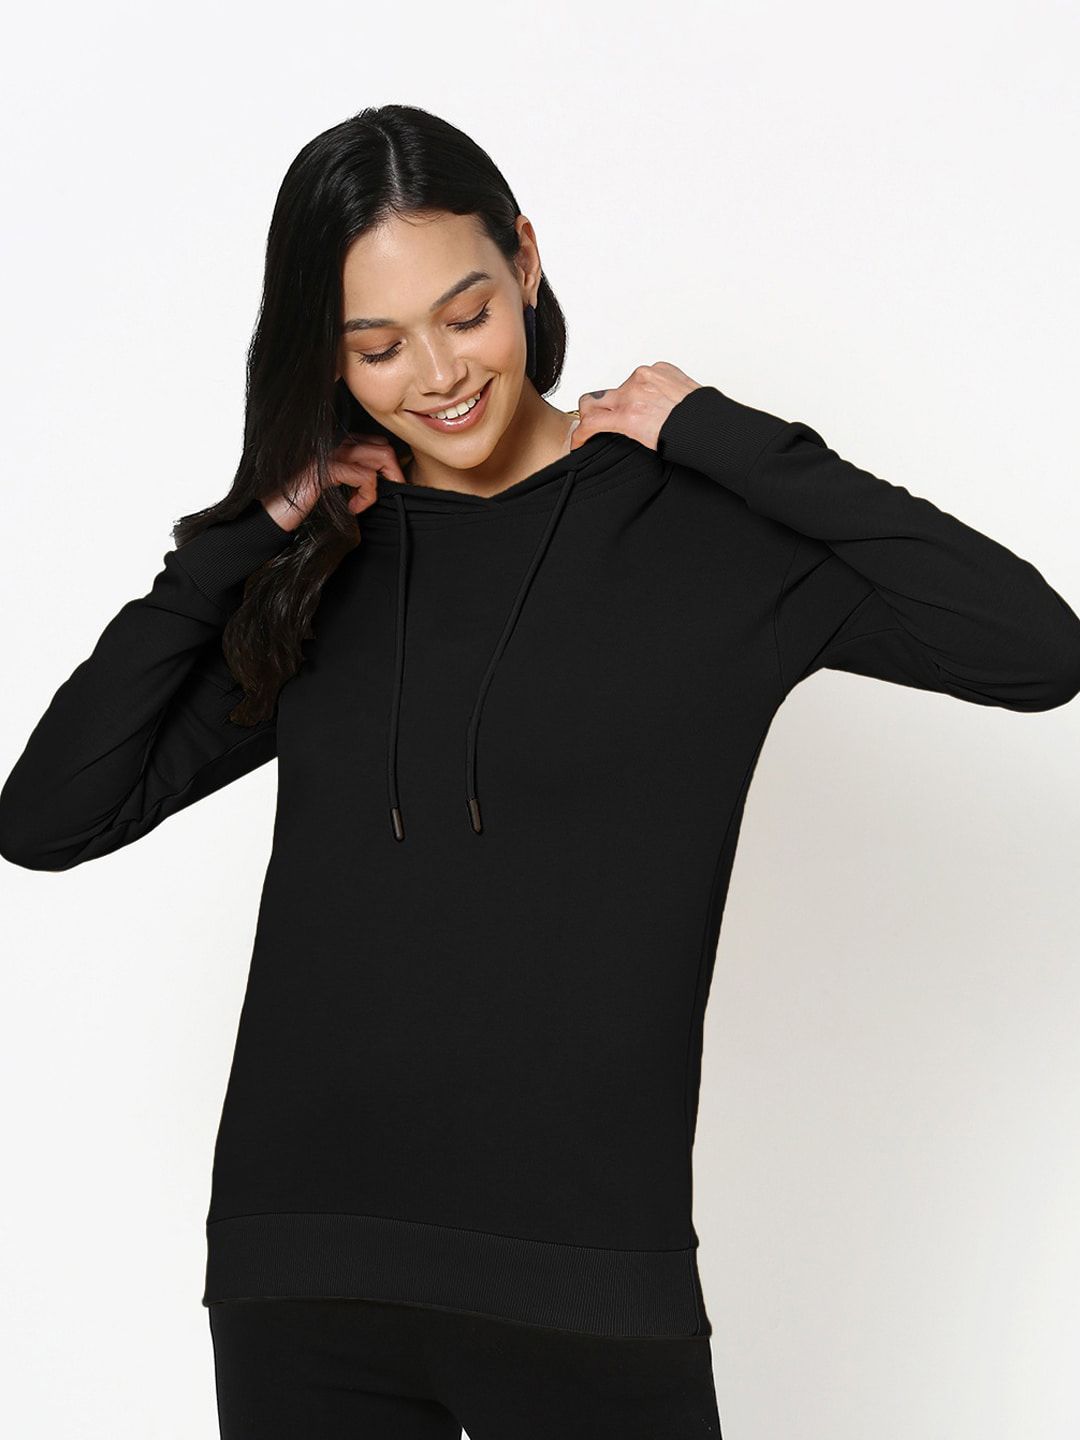 Bewakoof Women Black Solid Hooded Sweatshirt Price in India